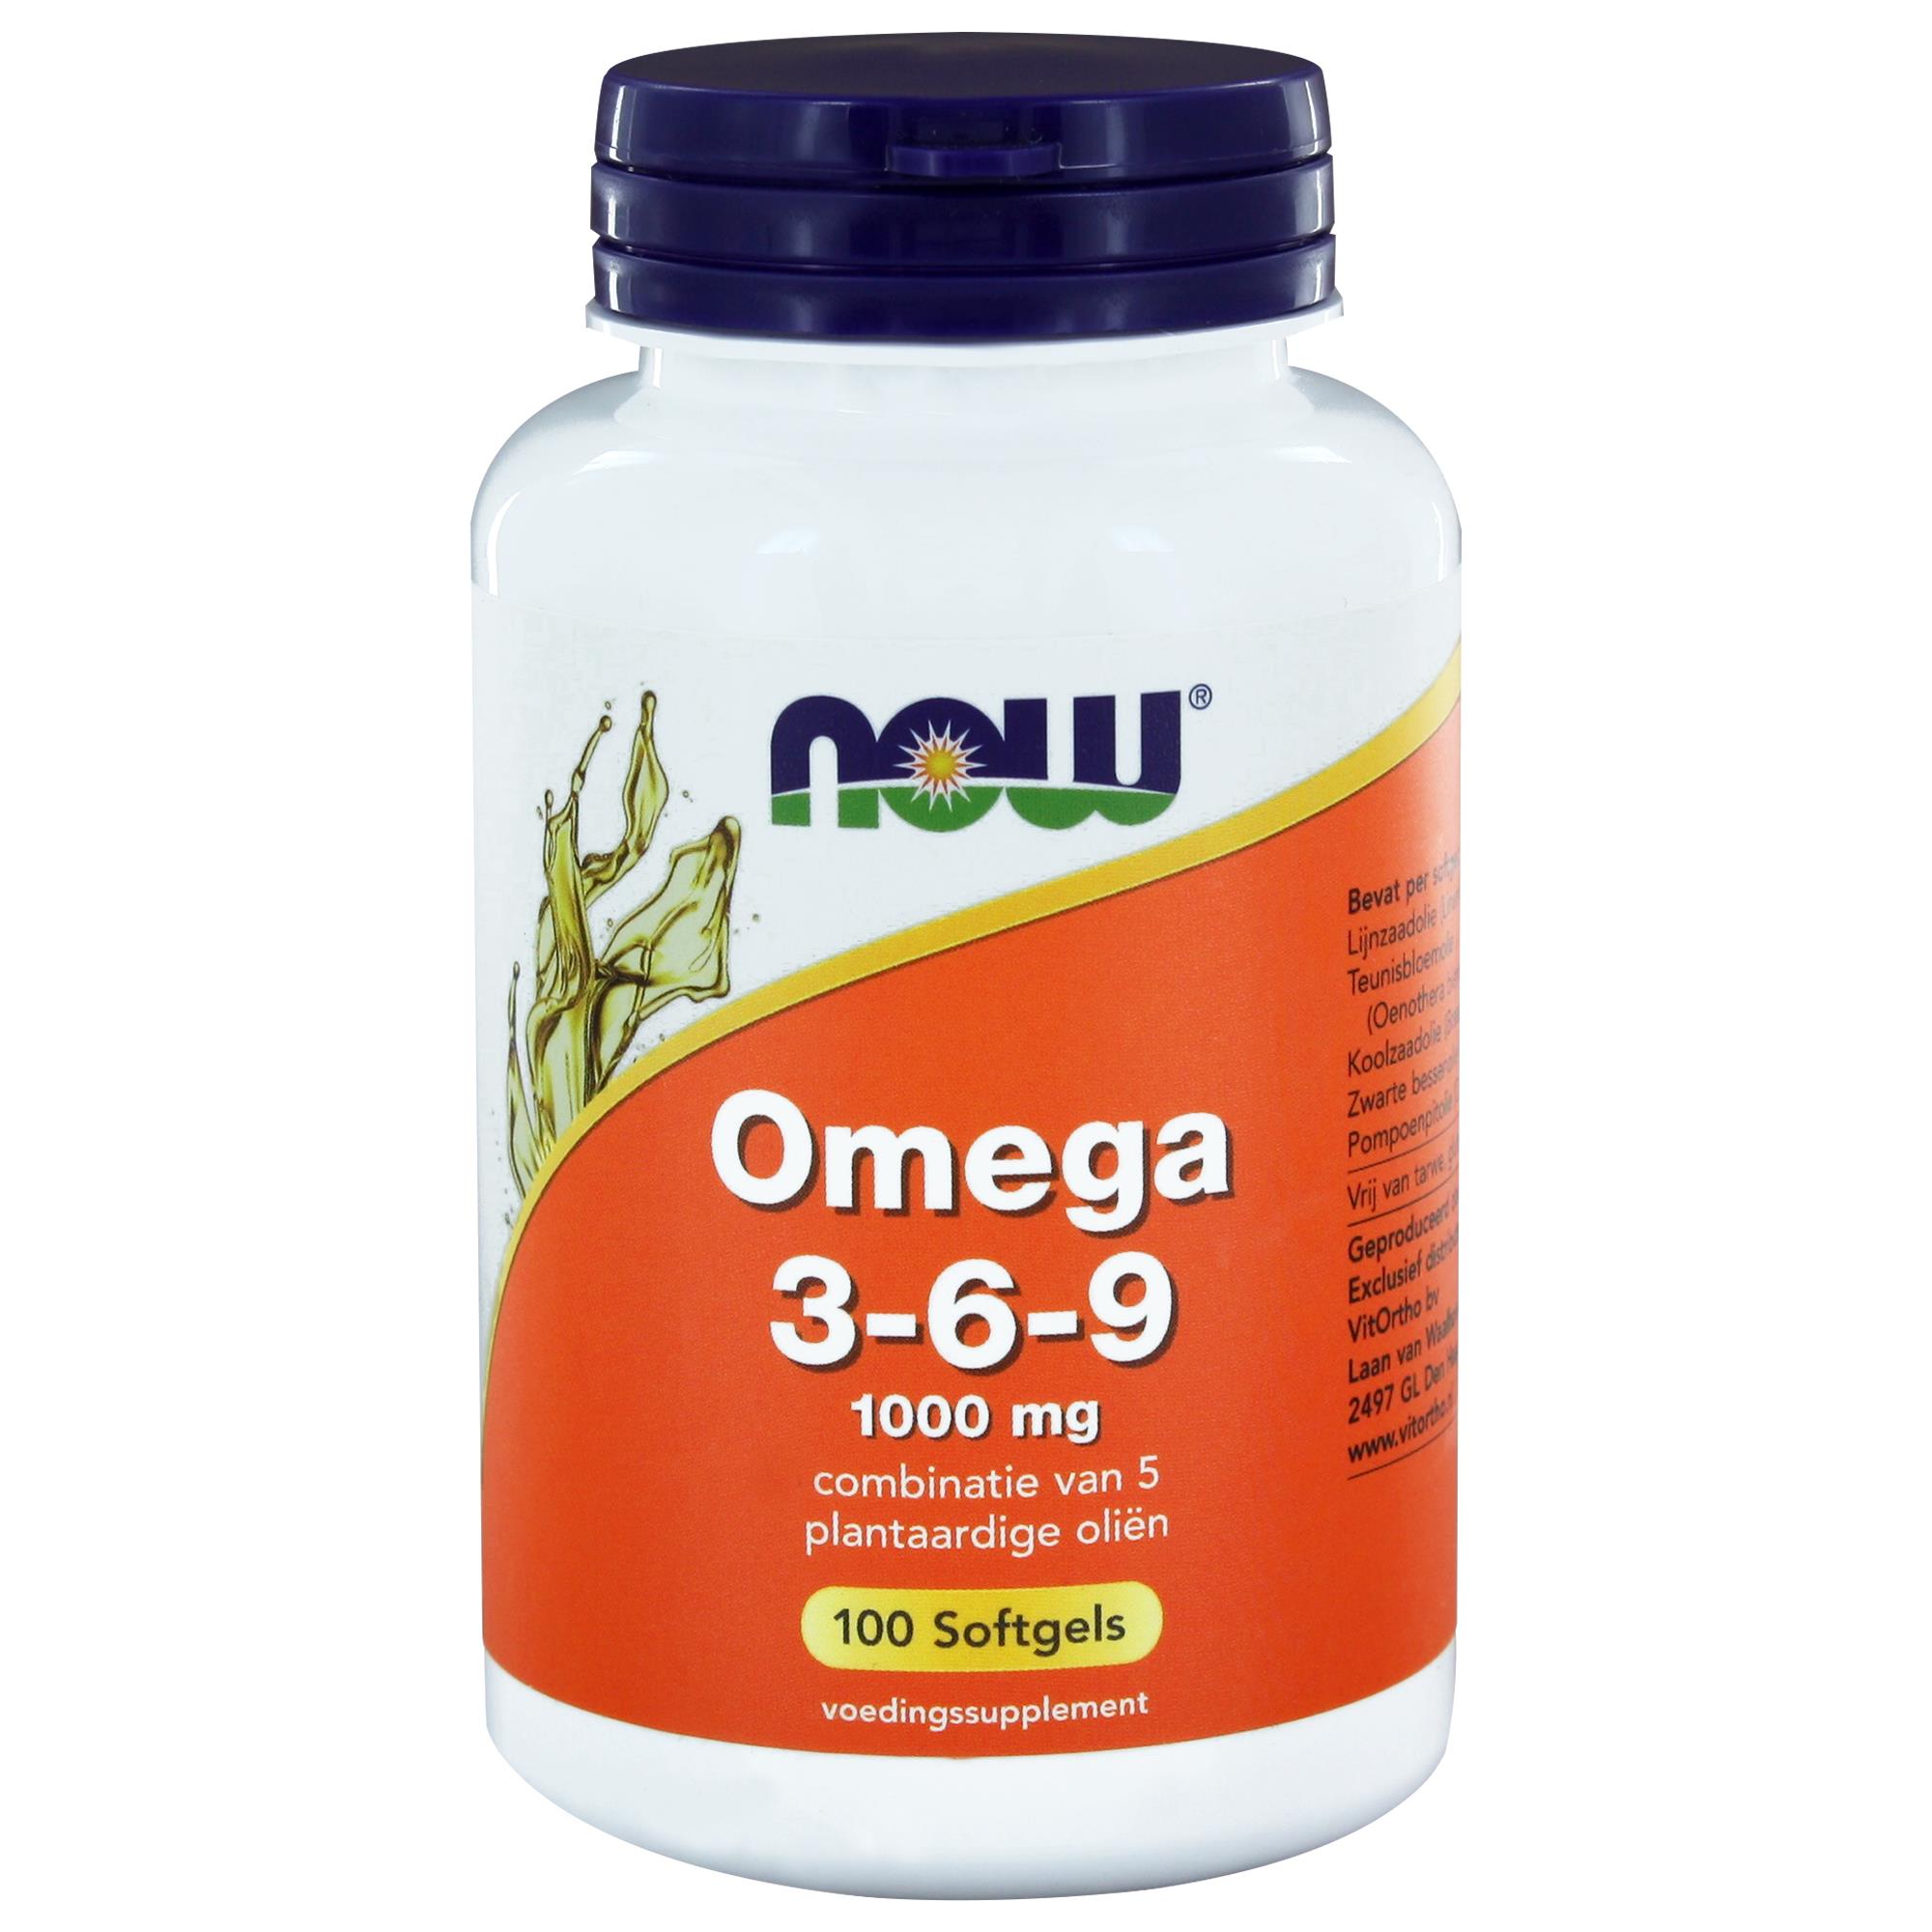 Omega 3-6-9 (1000 mg) - 100 softgels